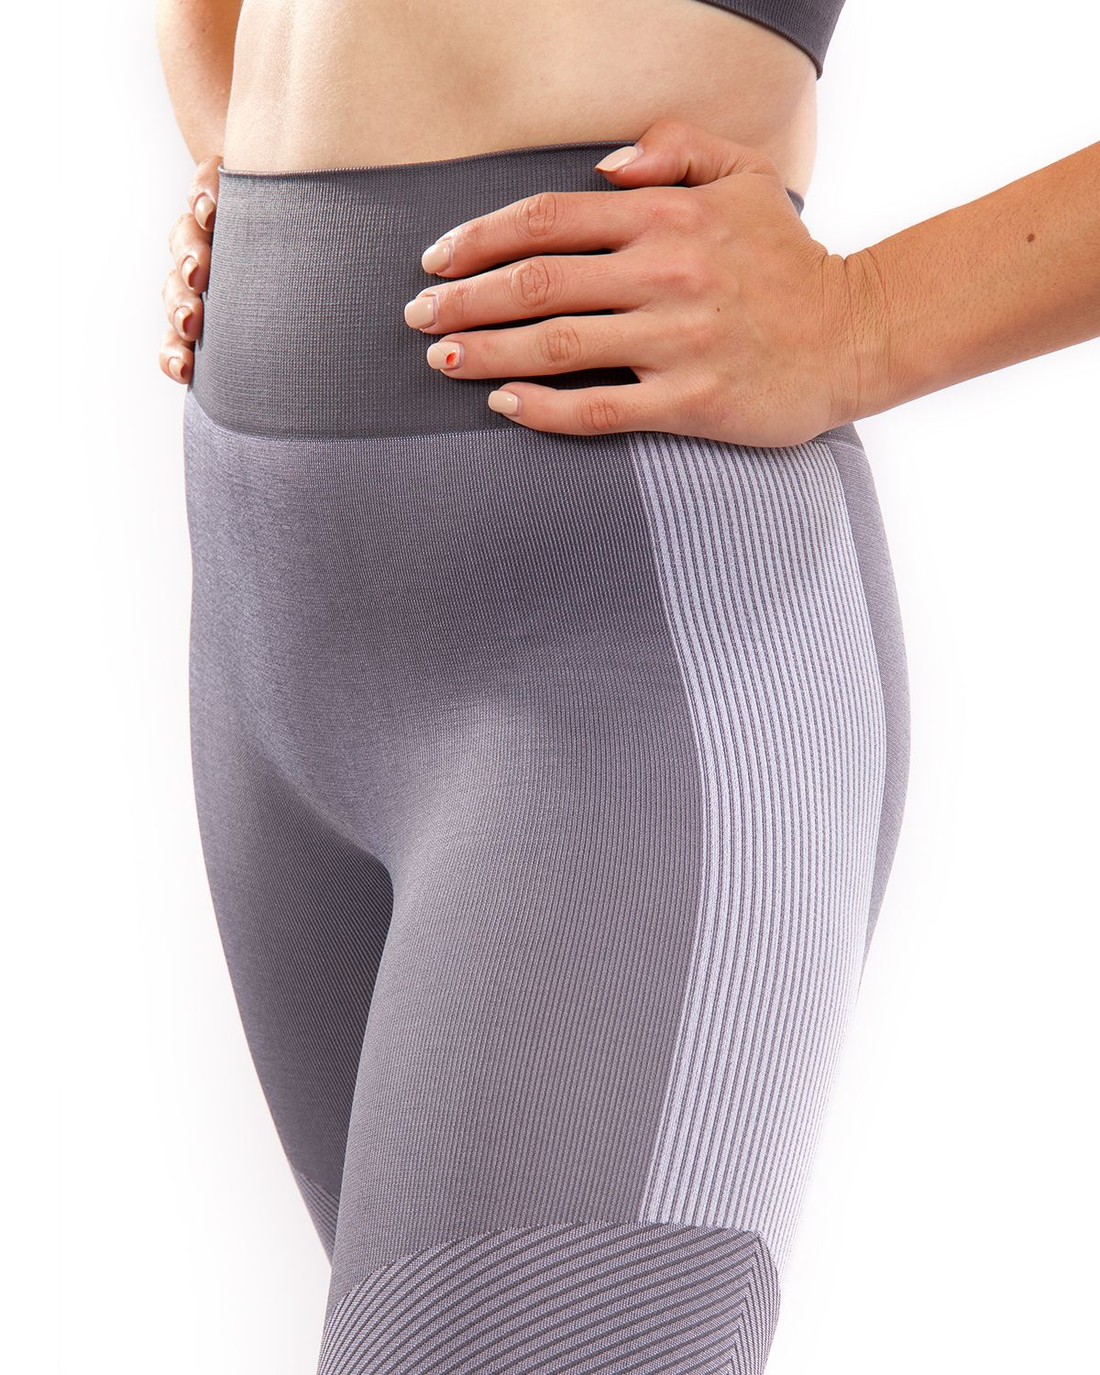  Yoga Pants - Fits4Yoga